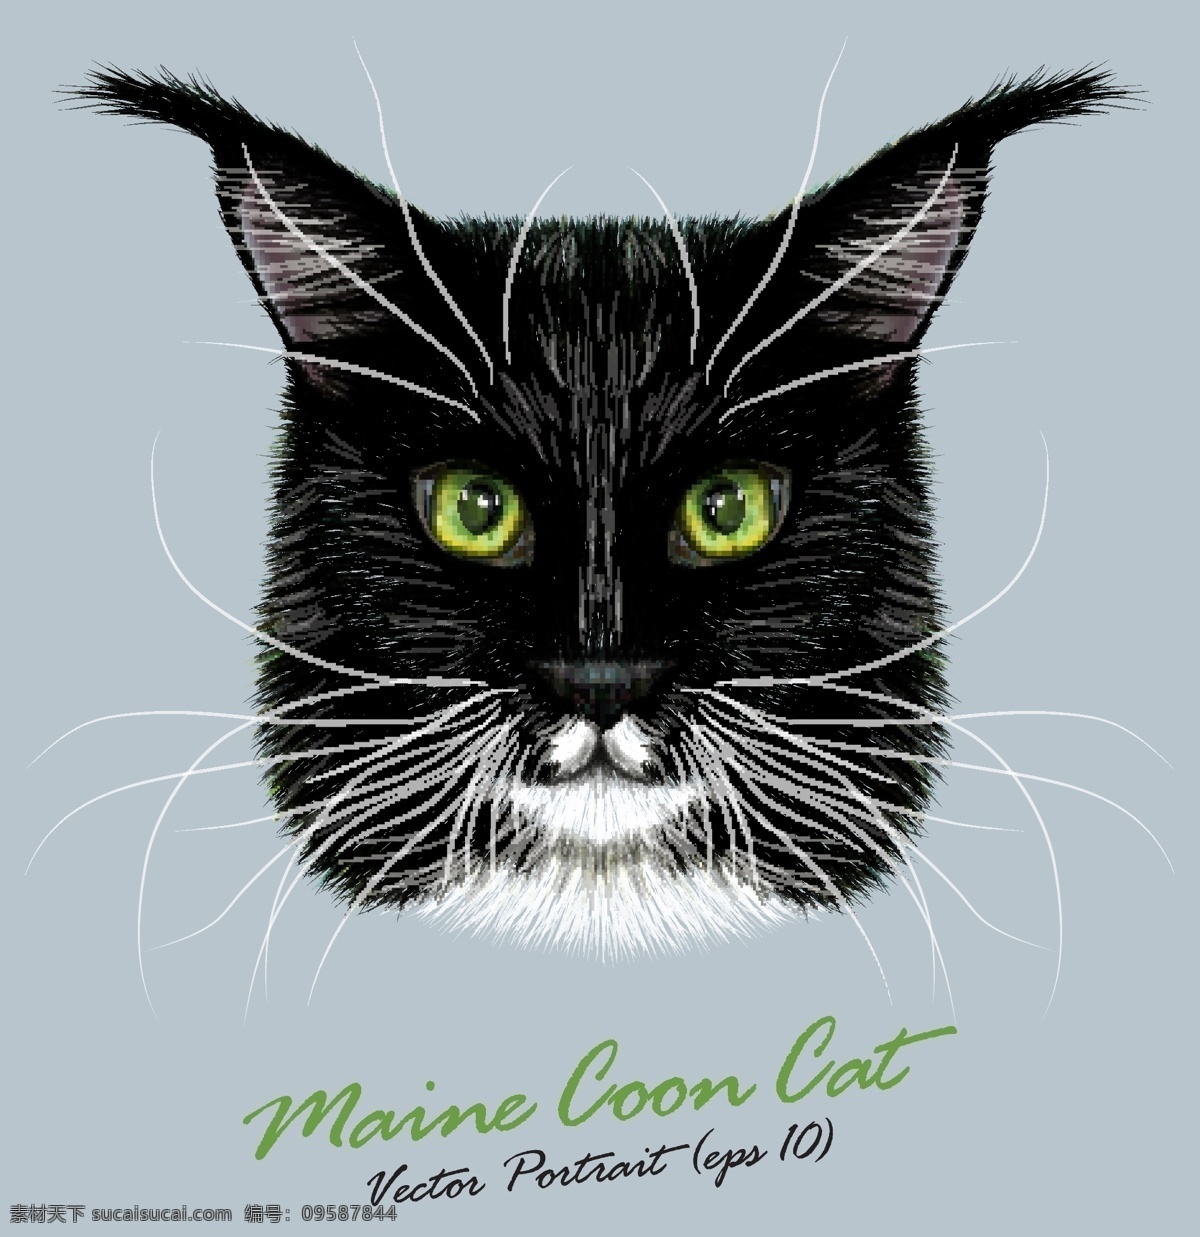 方 脸 猫咪 宠物 猫 头像 品种 矢量 黑色 名猫 可爱 动物 猫奴 毛绒绒 猫科动物 卡通 水彩 手绘 插画